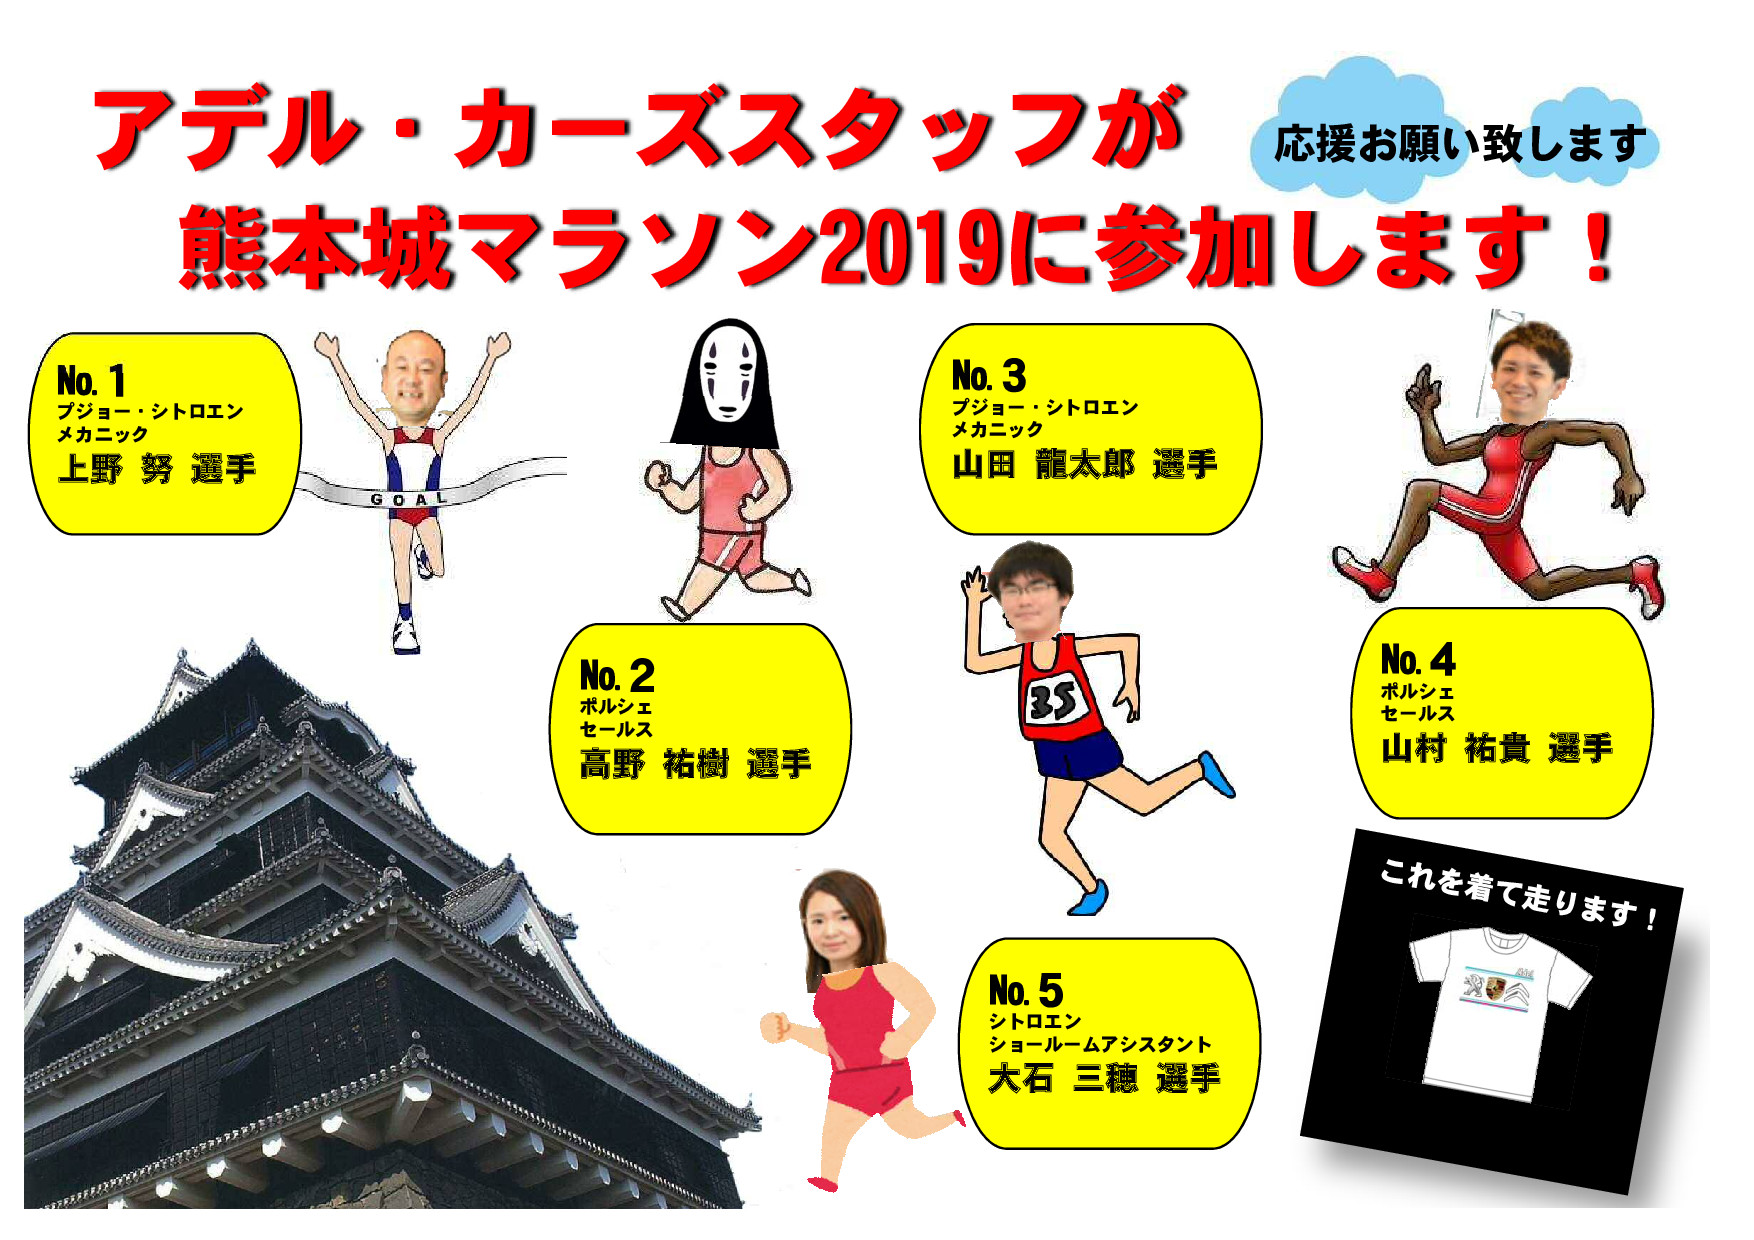 熊本城マラソンに出場します！